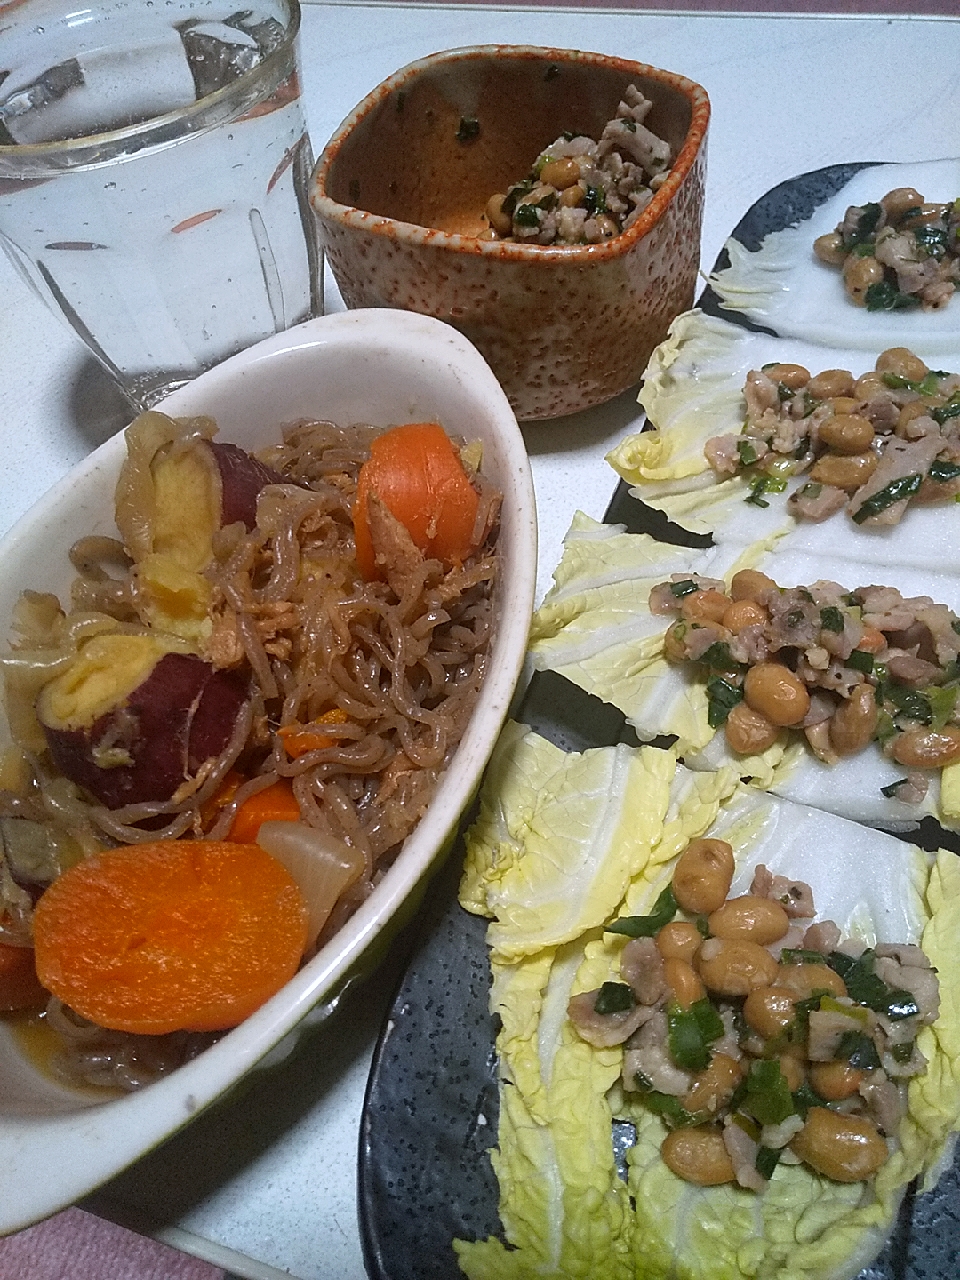 今日の晩御飯
※ツナの旨味と甘いさつま芋が美味しい煮物
※豚ミンチ納豆の白菜のせ
※焼酎ハイボール